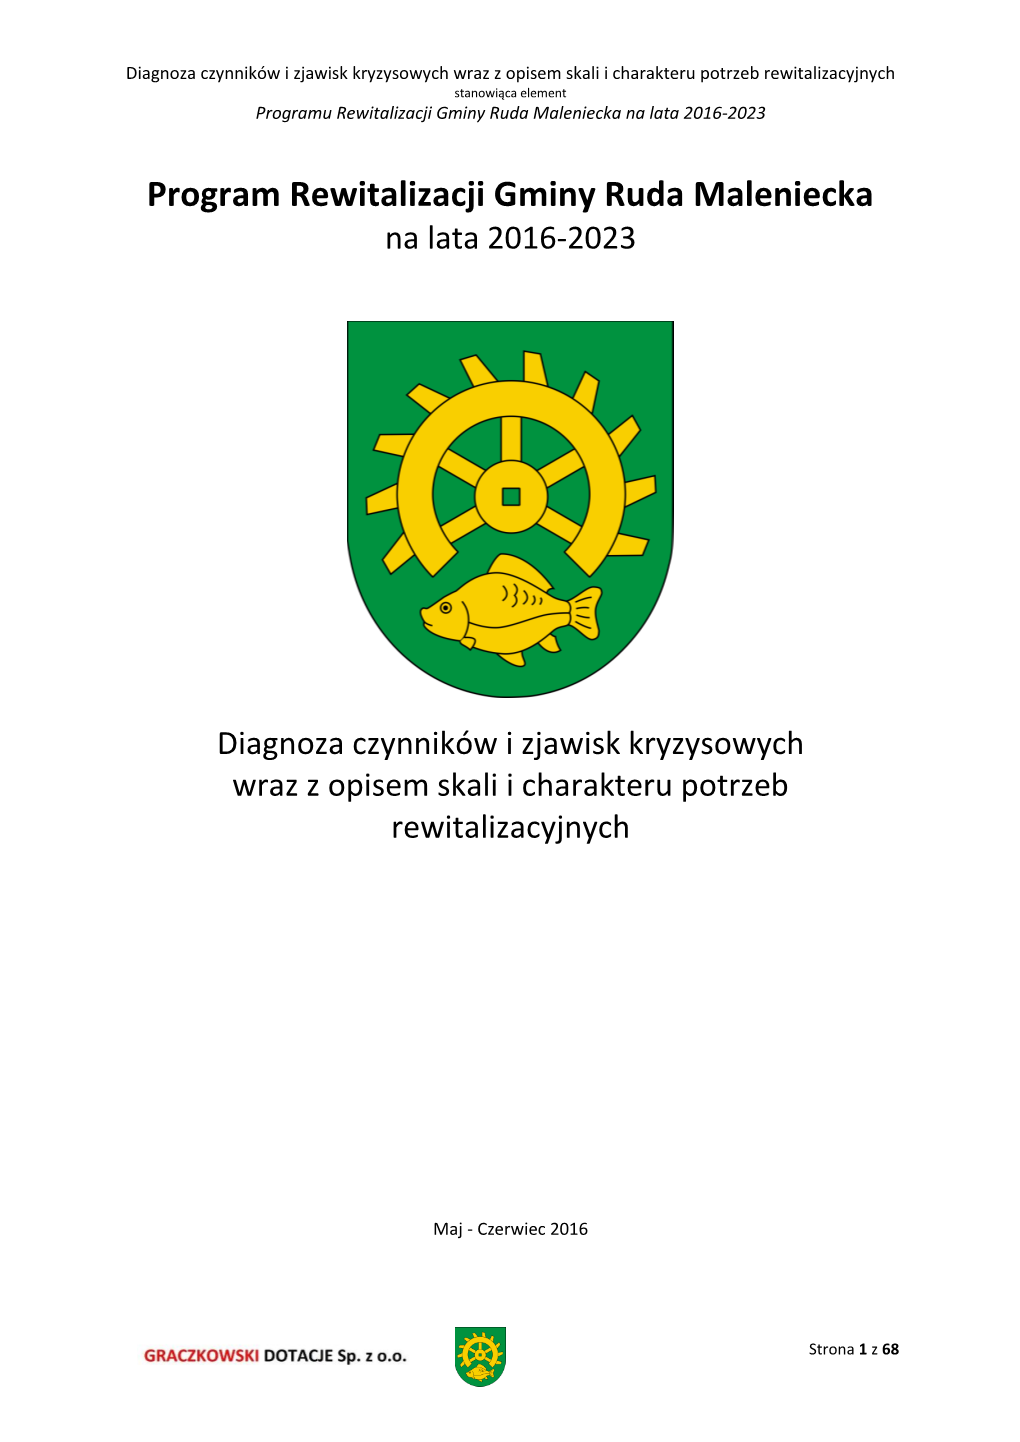 Program Rewitalizacji Gminy Ruda Maleniecka Na Lata 2016-2023